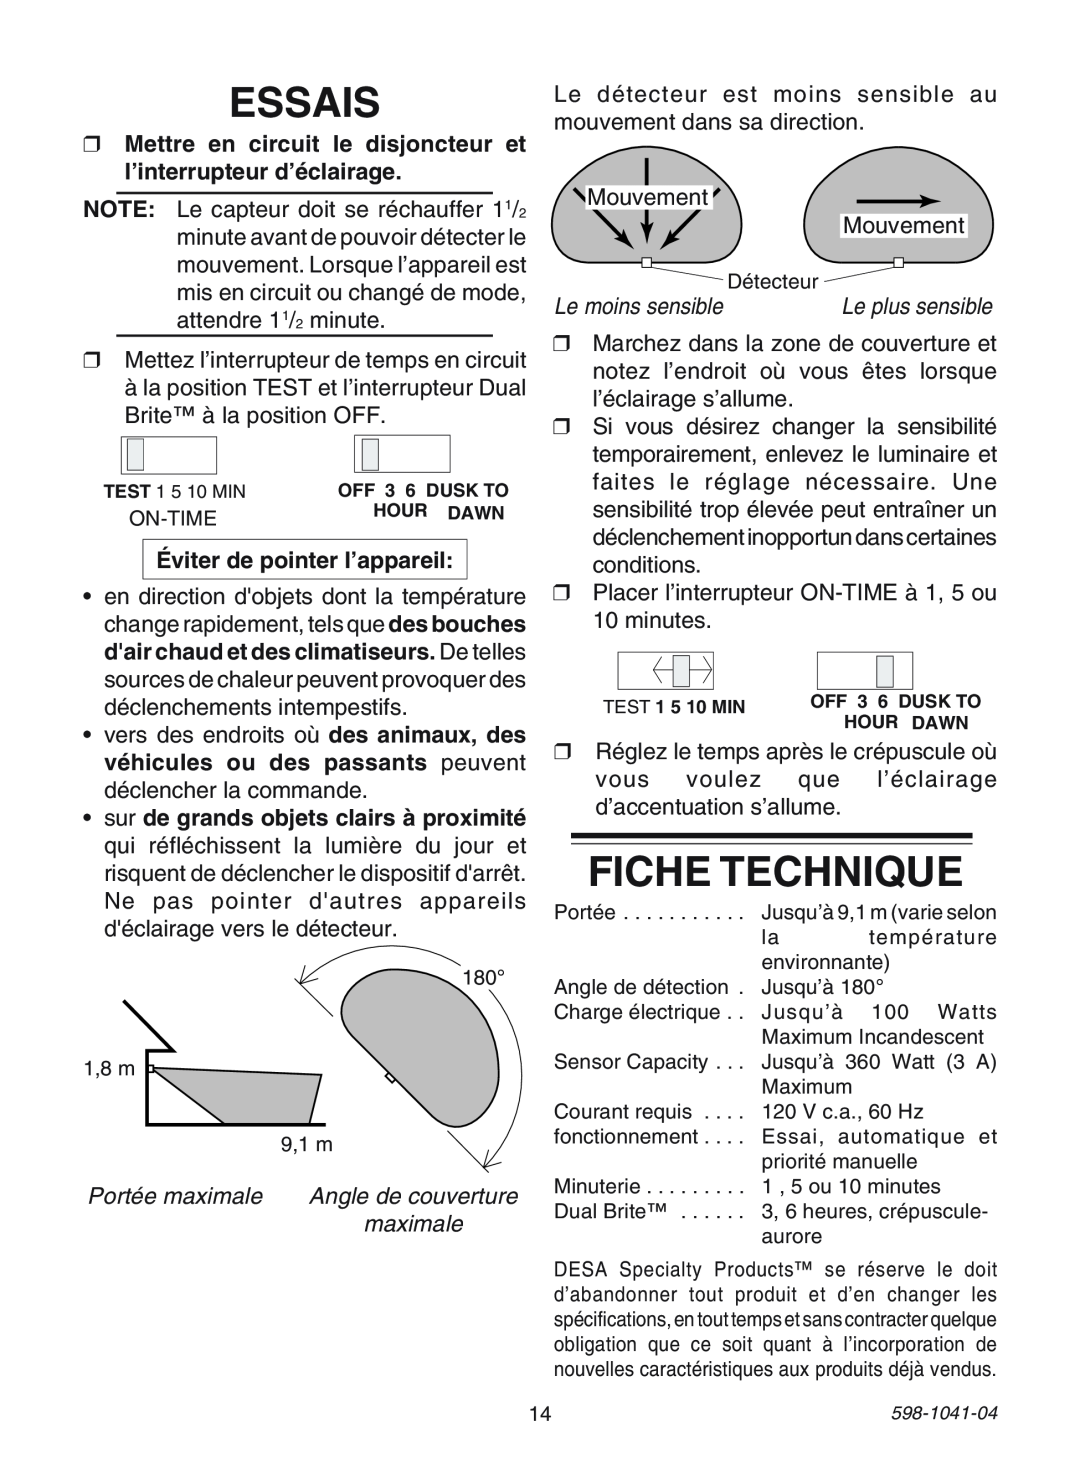 Heath Zenith 598-1041-04 manual Essais, Fiche Technique, Éviter de pointer l’appareil, Portée maximale, Angle de couverture 